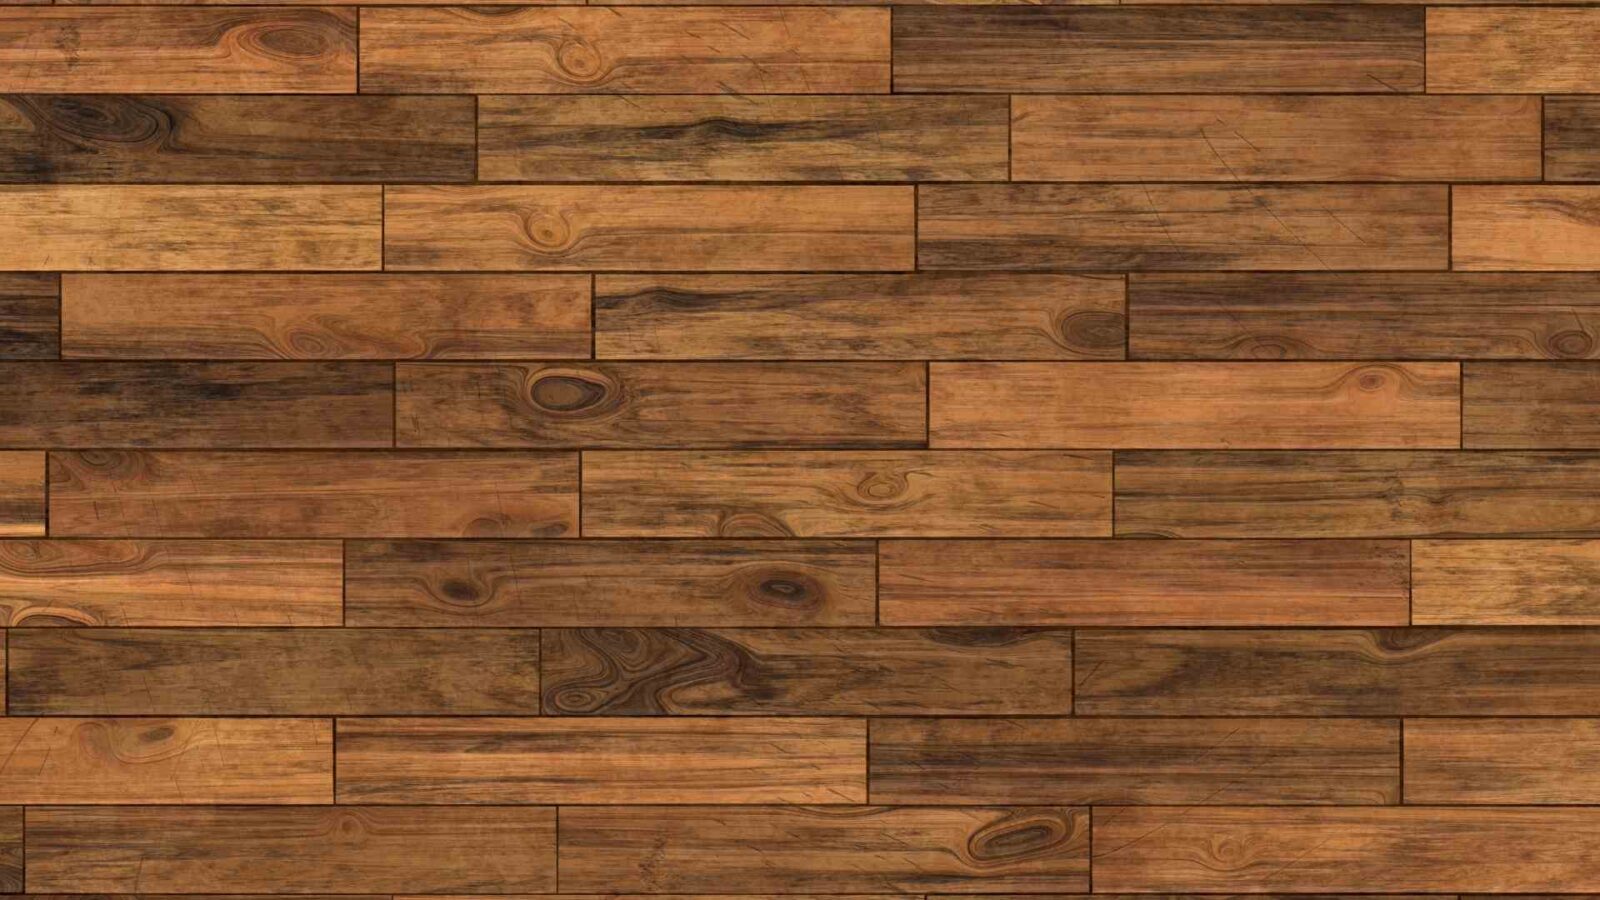 Good Hardwood Floor